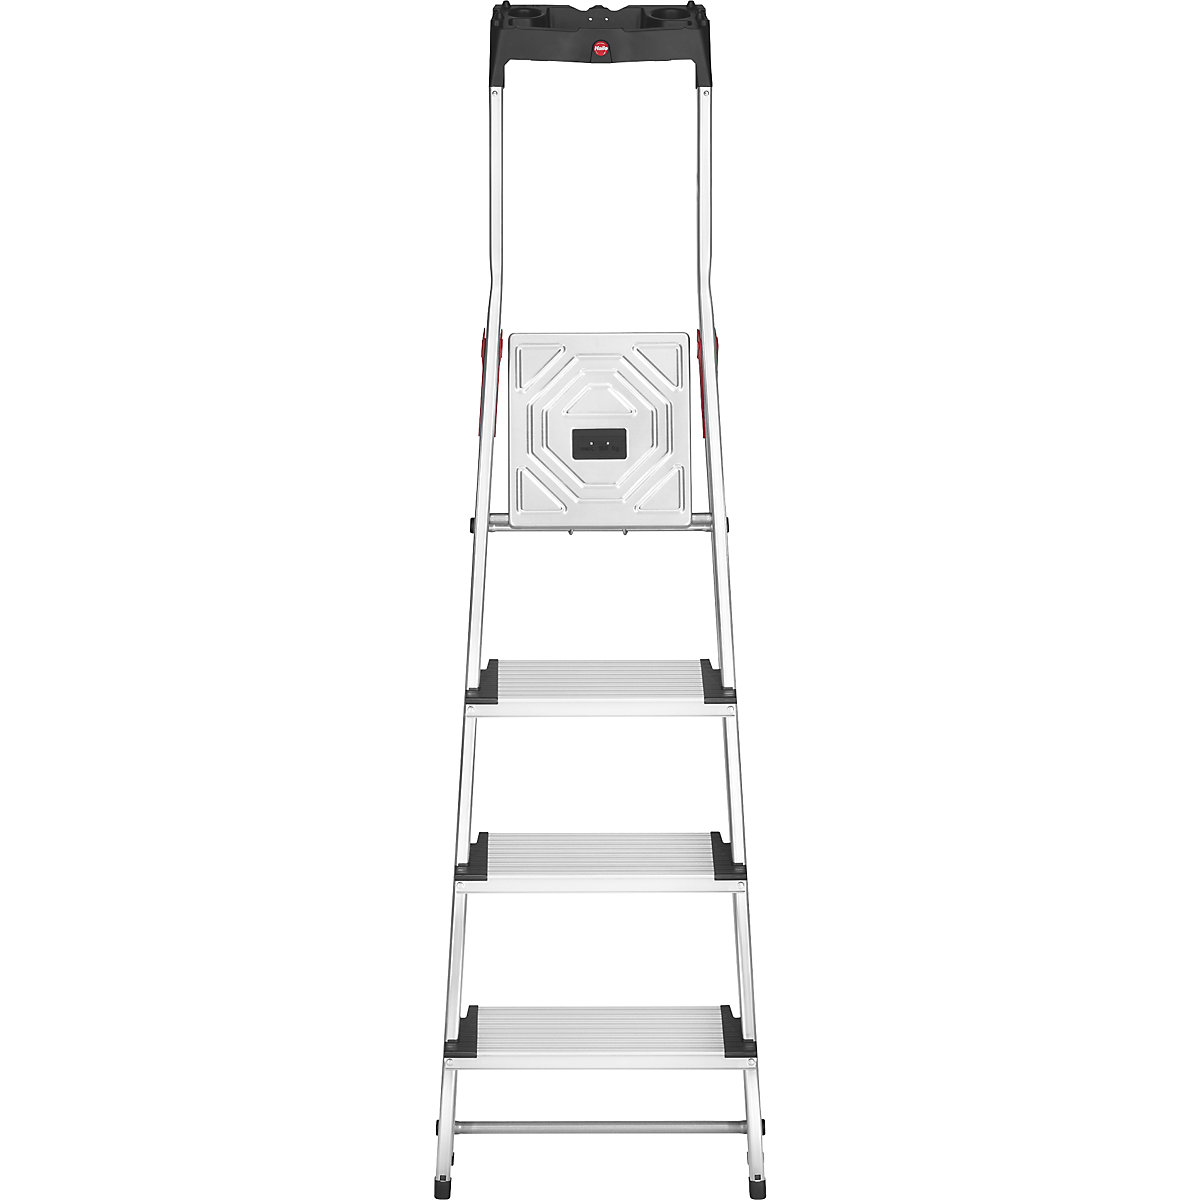 Aluminijasta dvokraka lestev s stopnicami ComfortLine L80 – Hailo (Slika izdelka 11)